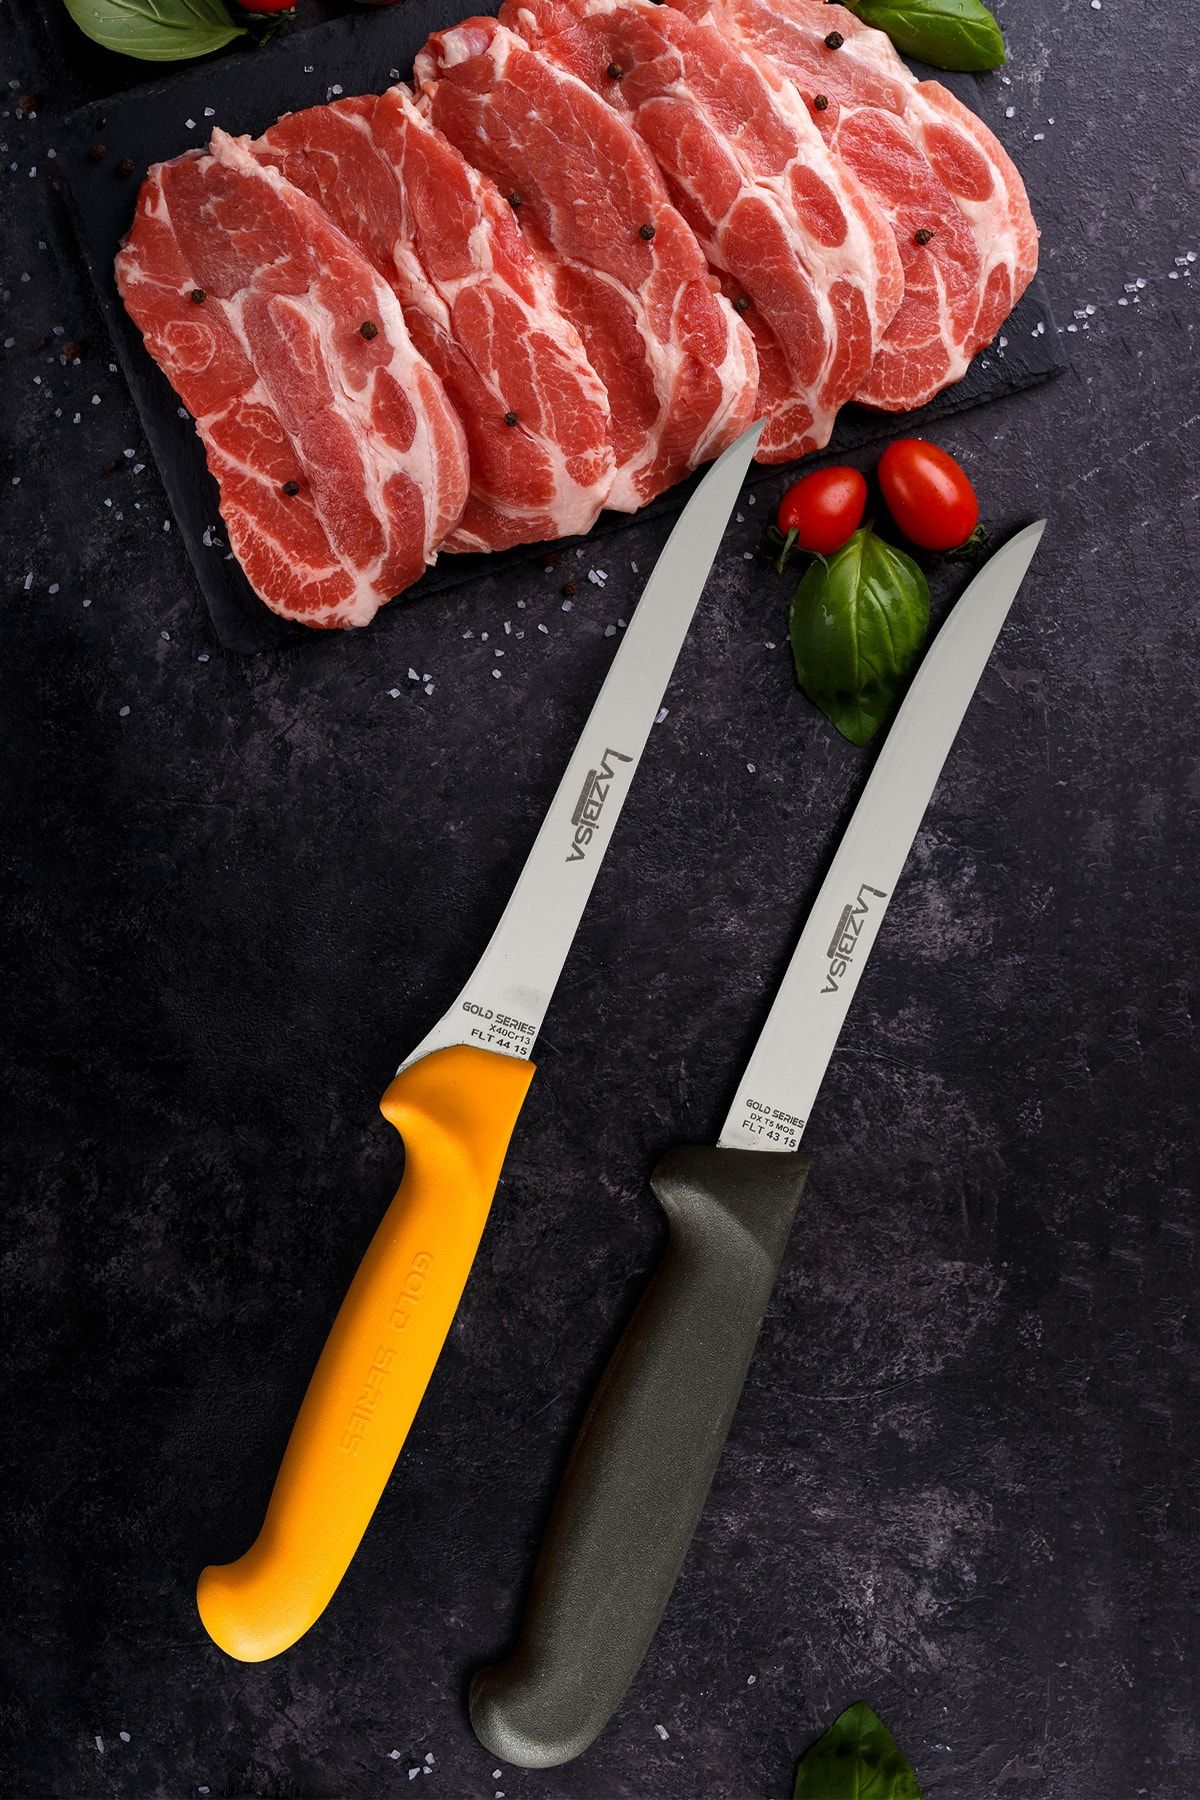 LAZBİSA Mutfak Bıçak Seti Fileto Steak Bıçağı 2 li Gold ve Black Serisi